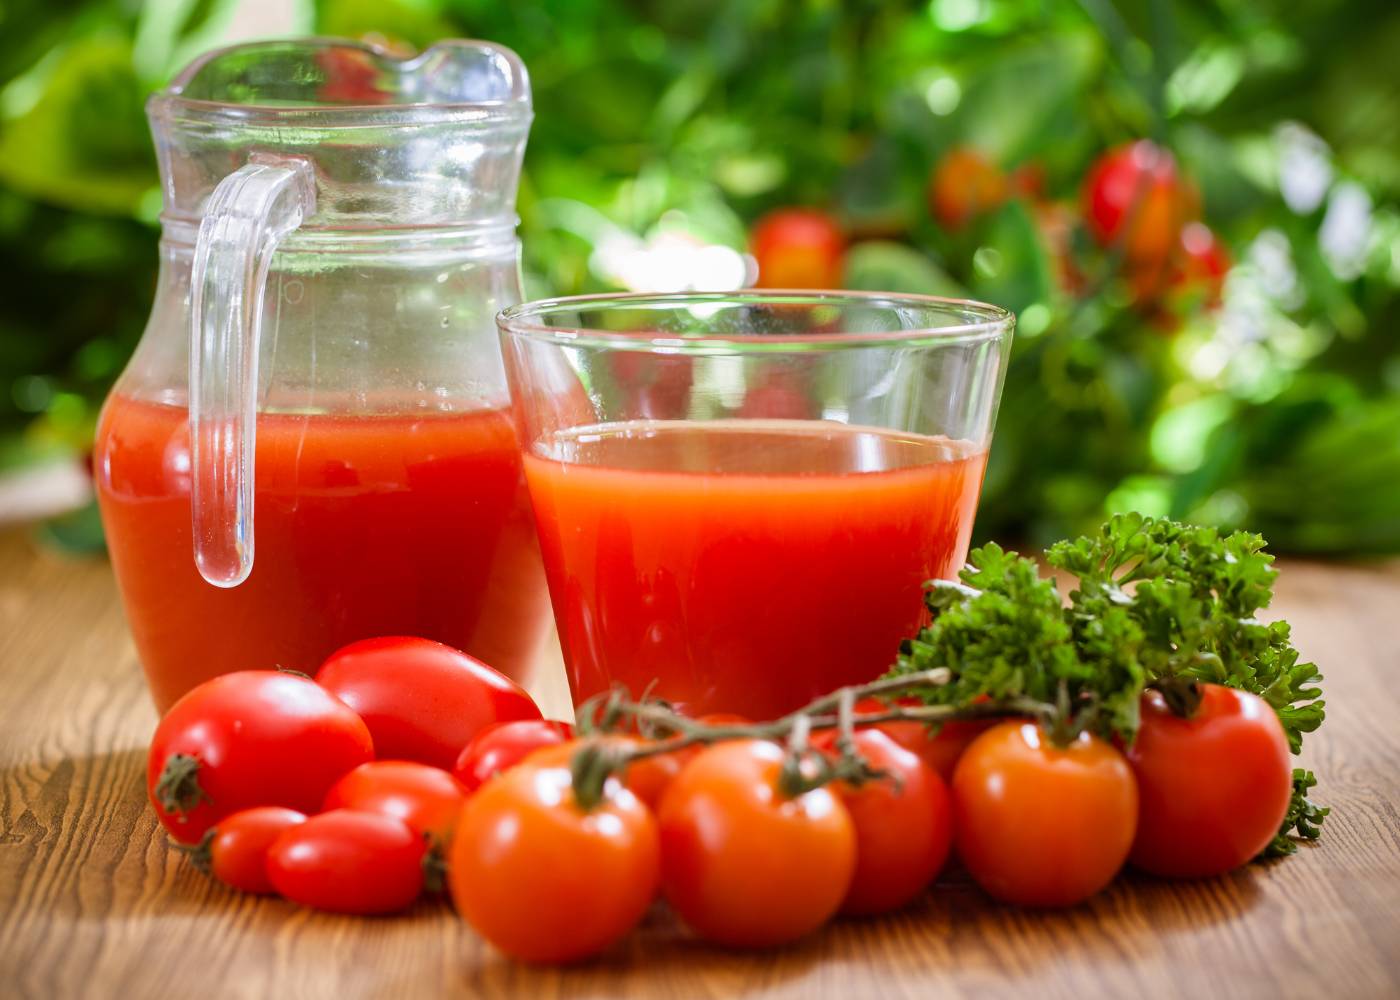 Sok pomidorowy i dna moczanowa. Na zdjęciu pomidory i sok pomidorowy w szklanym dzbanku